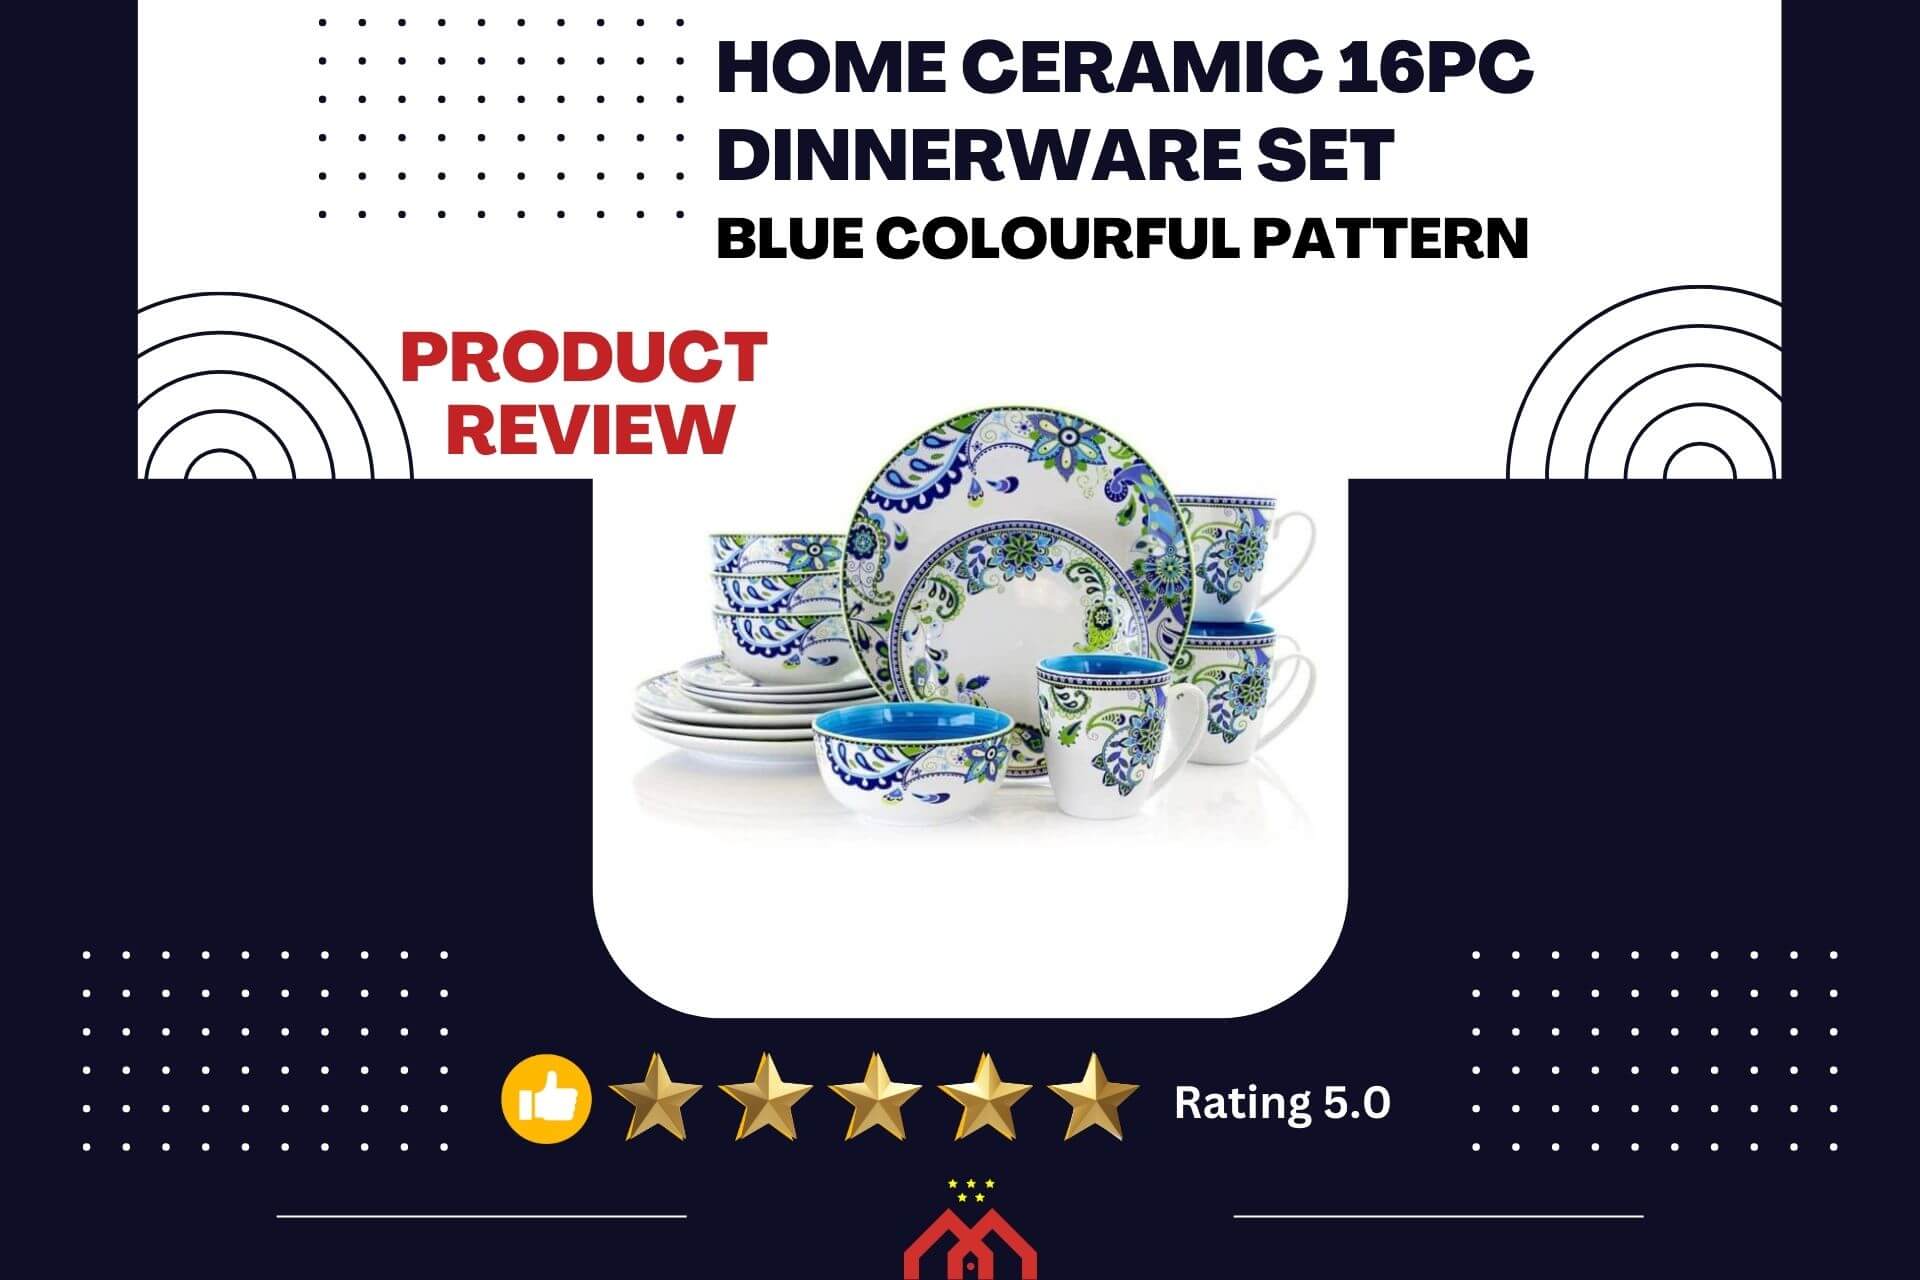 Home Ceramic 16pc Dinnerware Set - Feature Image